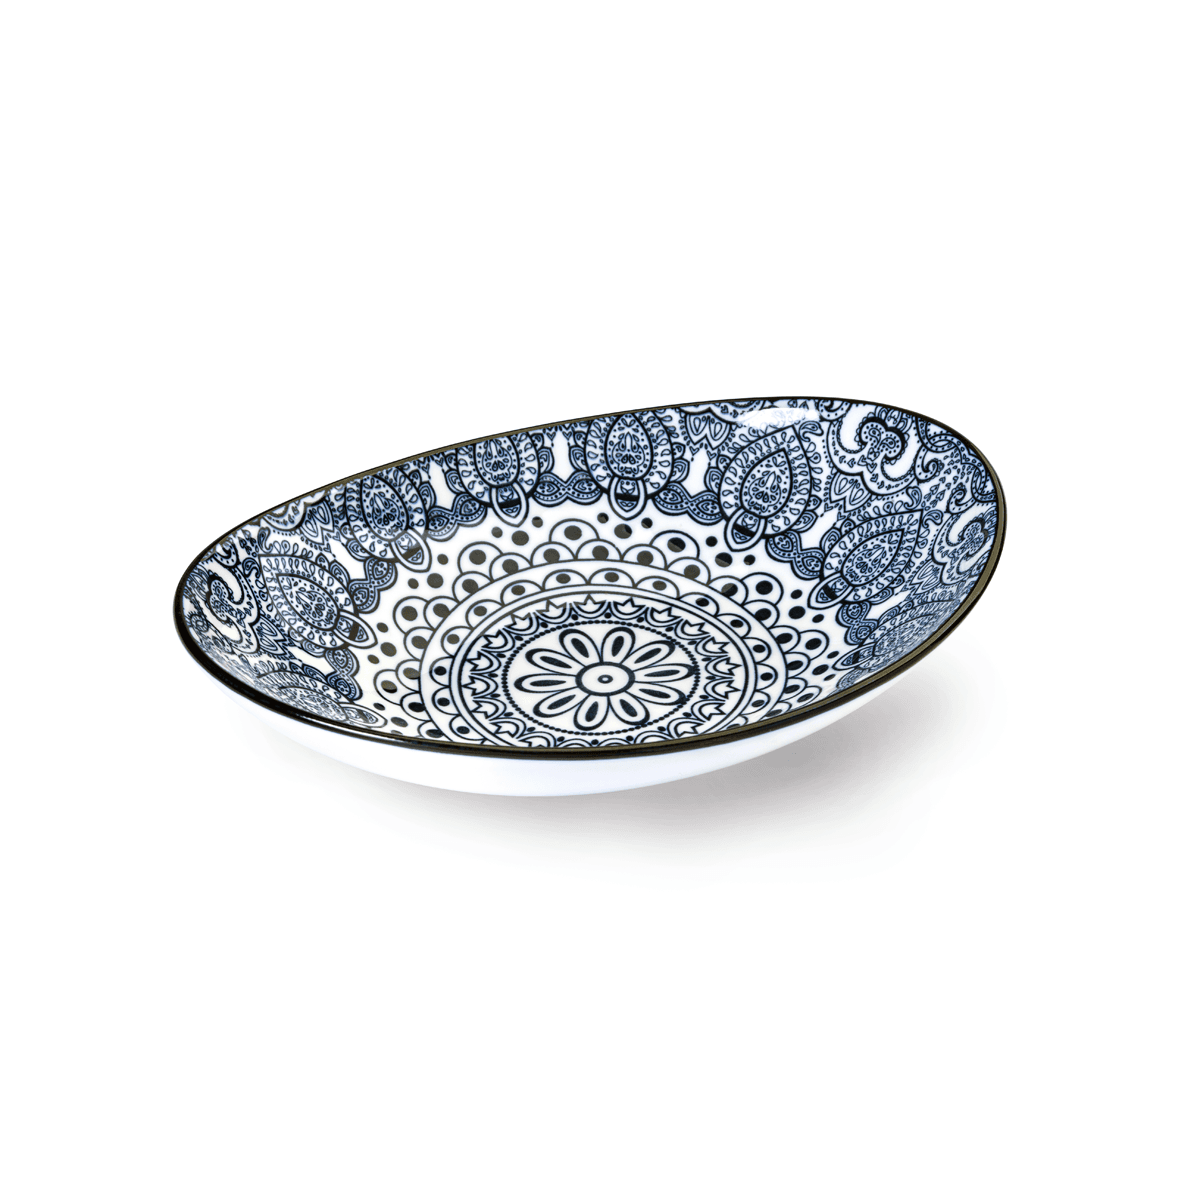 Che Brucia Arabesque Blue Porcelain Oval Bowl 20 cm / 8" Blue Ivory Porcelain